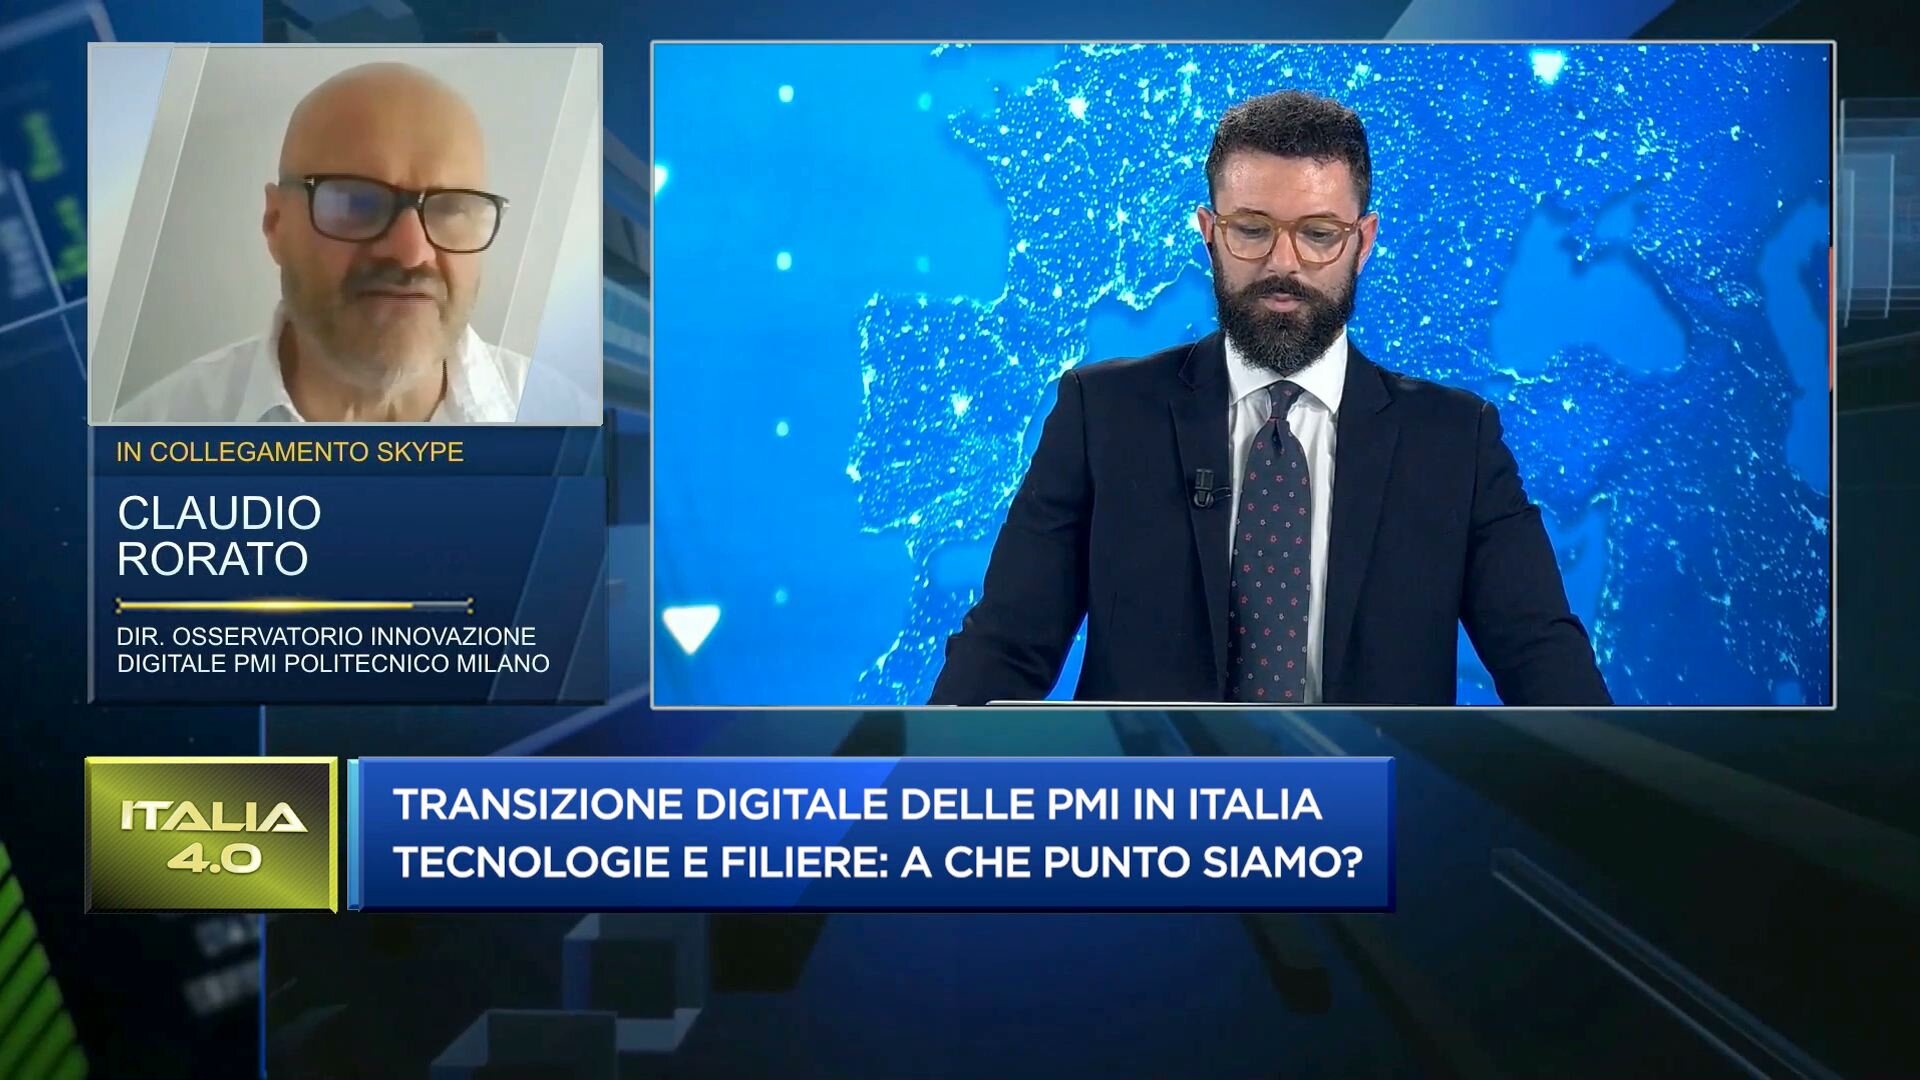 Transizione digitale delle pmi in Italia: a che punto siamo?